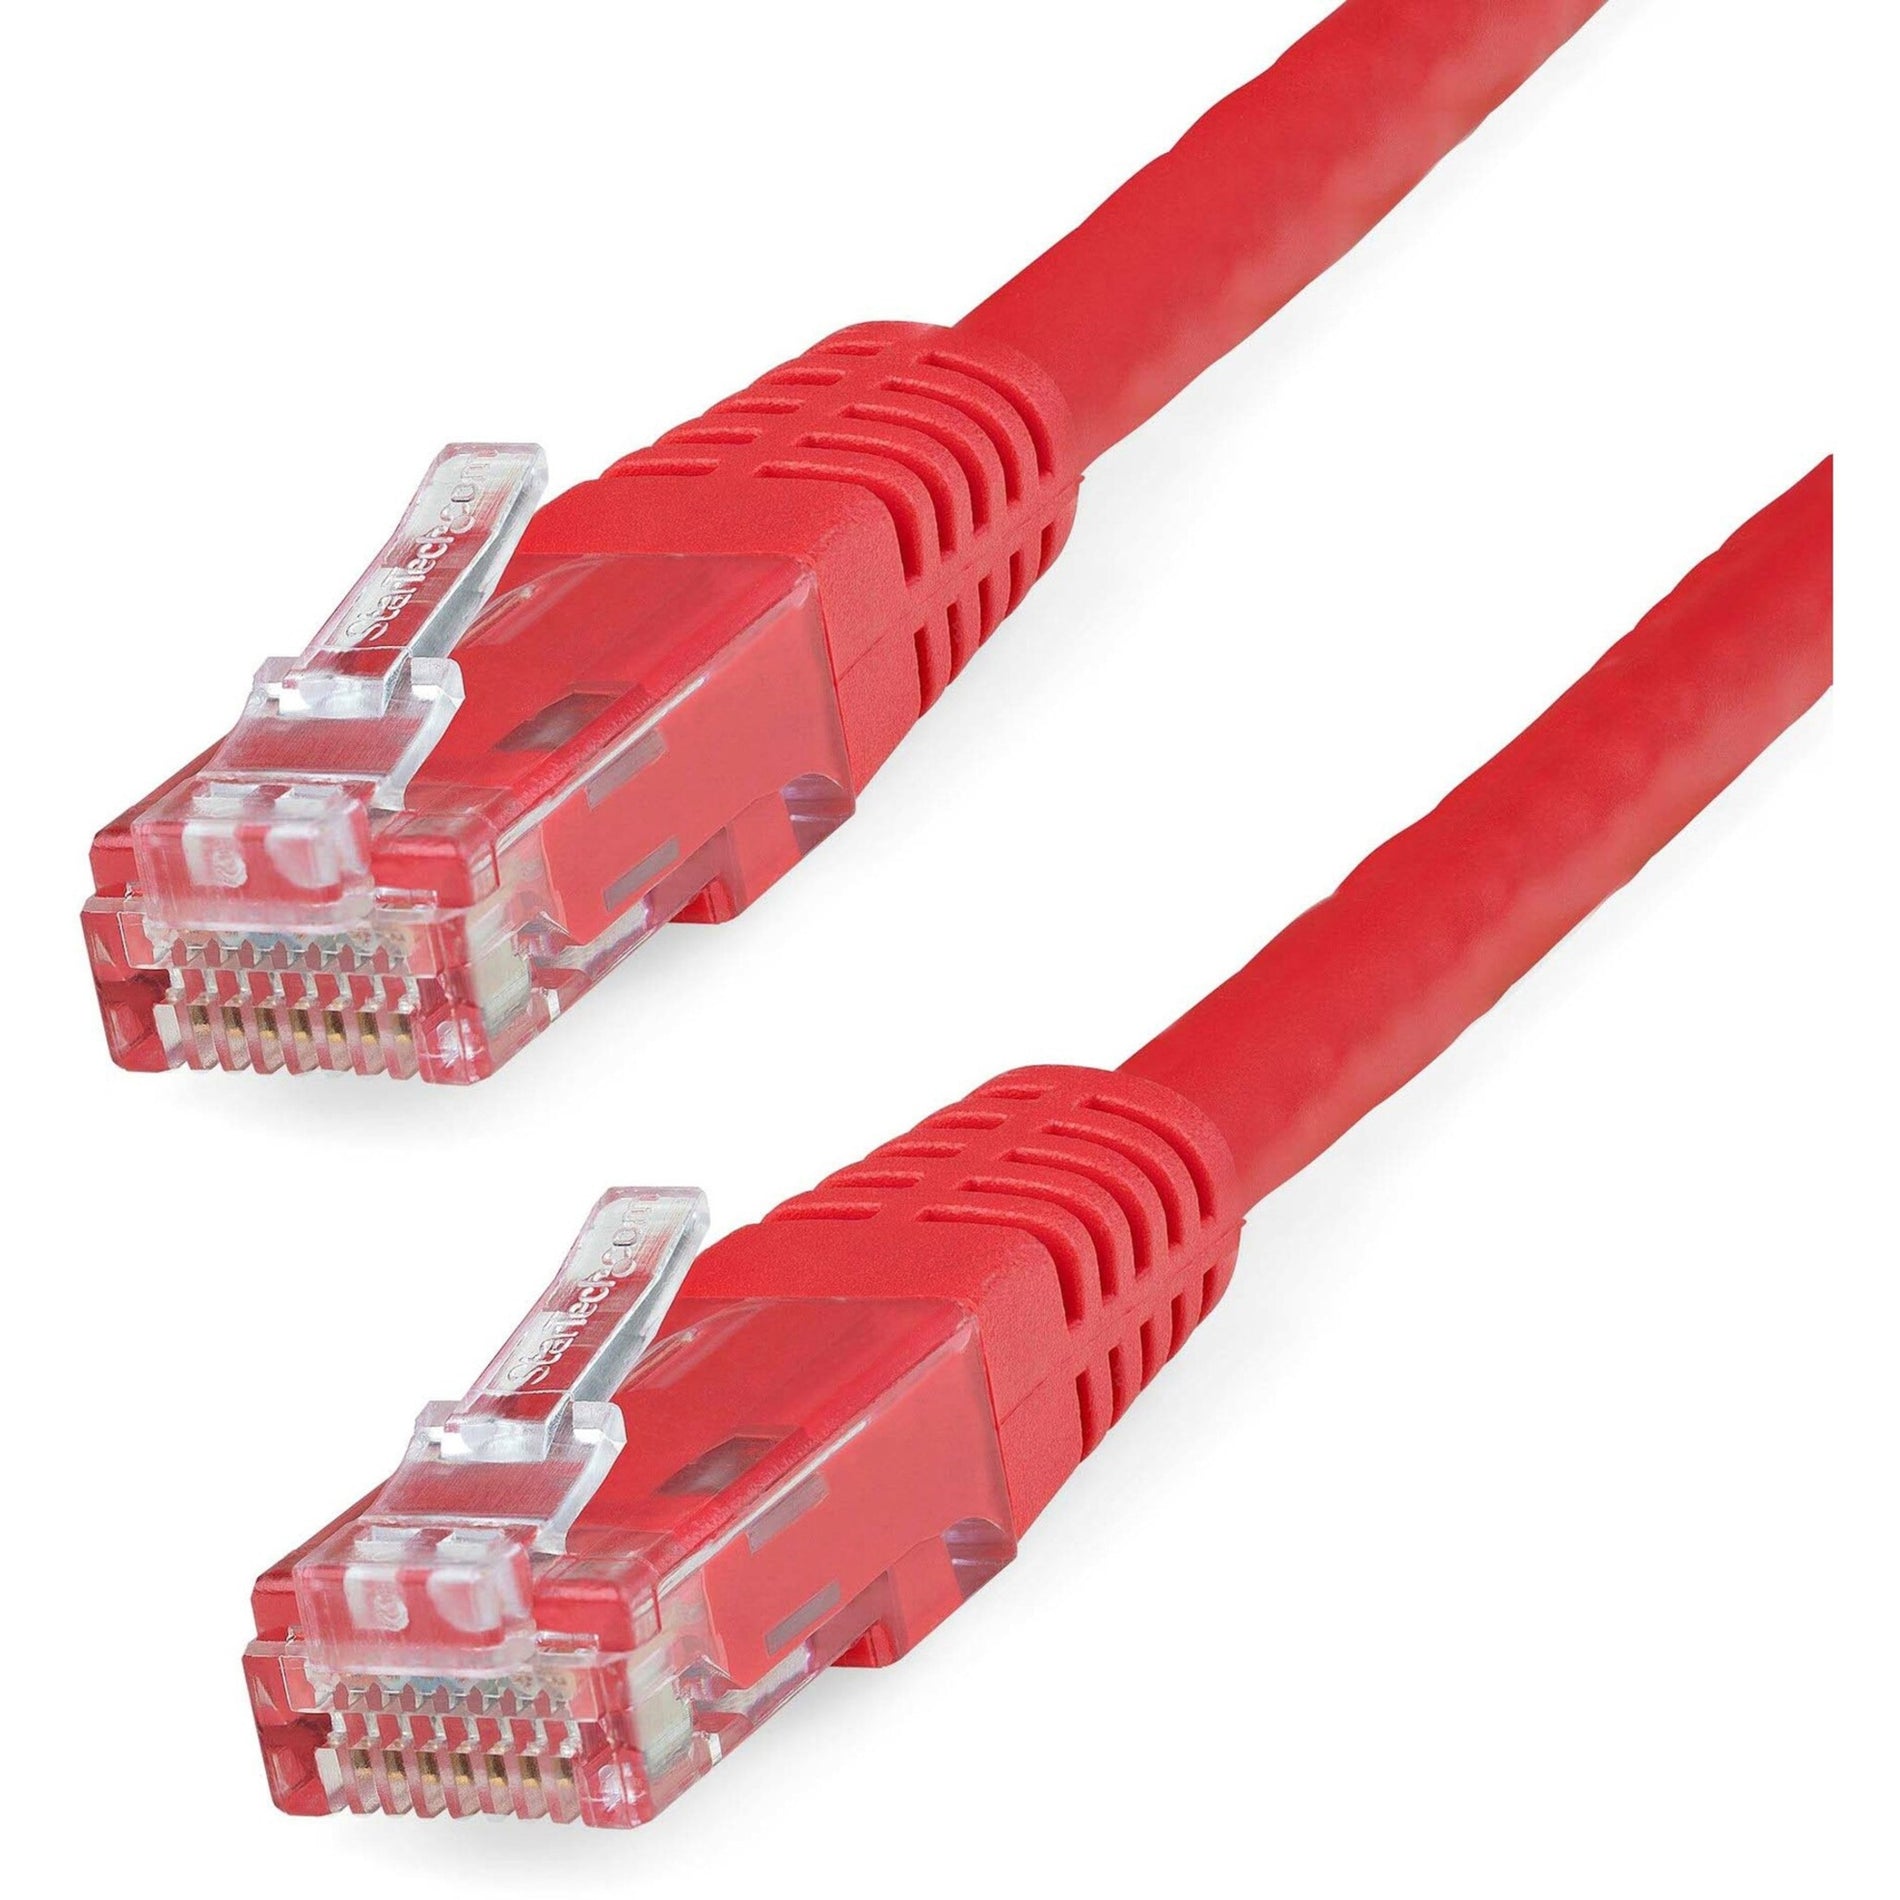 星那科科技股份有限公司 C6PATCH15RD 15英尺红色Cat6 UTP补丁电缆ETL验证，10 Gbit/s数据传输速率，镀金连接器